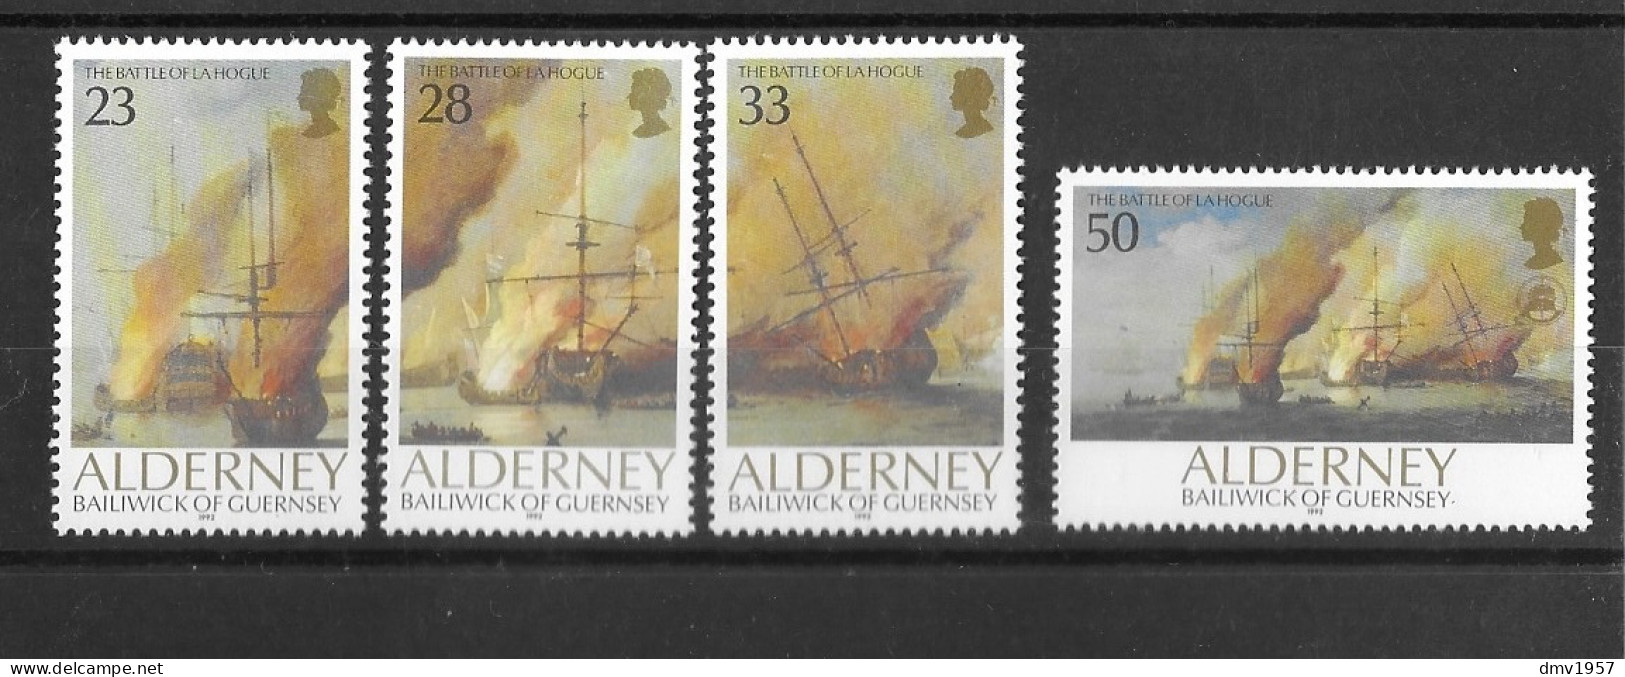 Alderney 1992 MNH 300th Anniv Of Battle Of La Hogue Sg A52/5 - Alderney